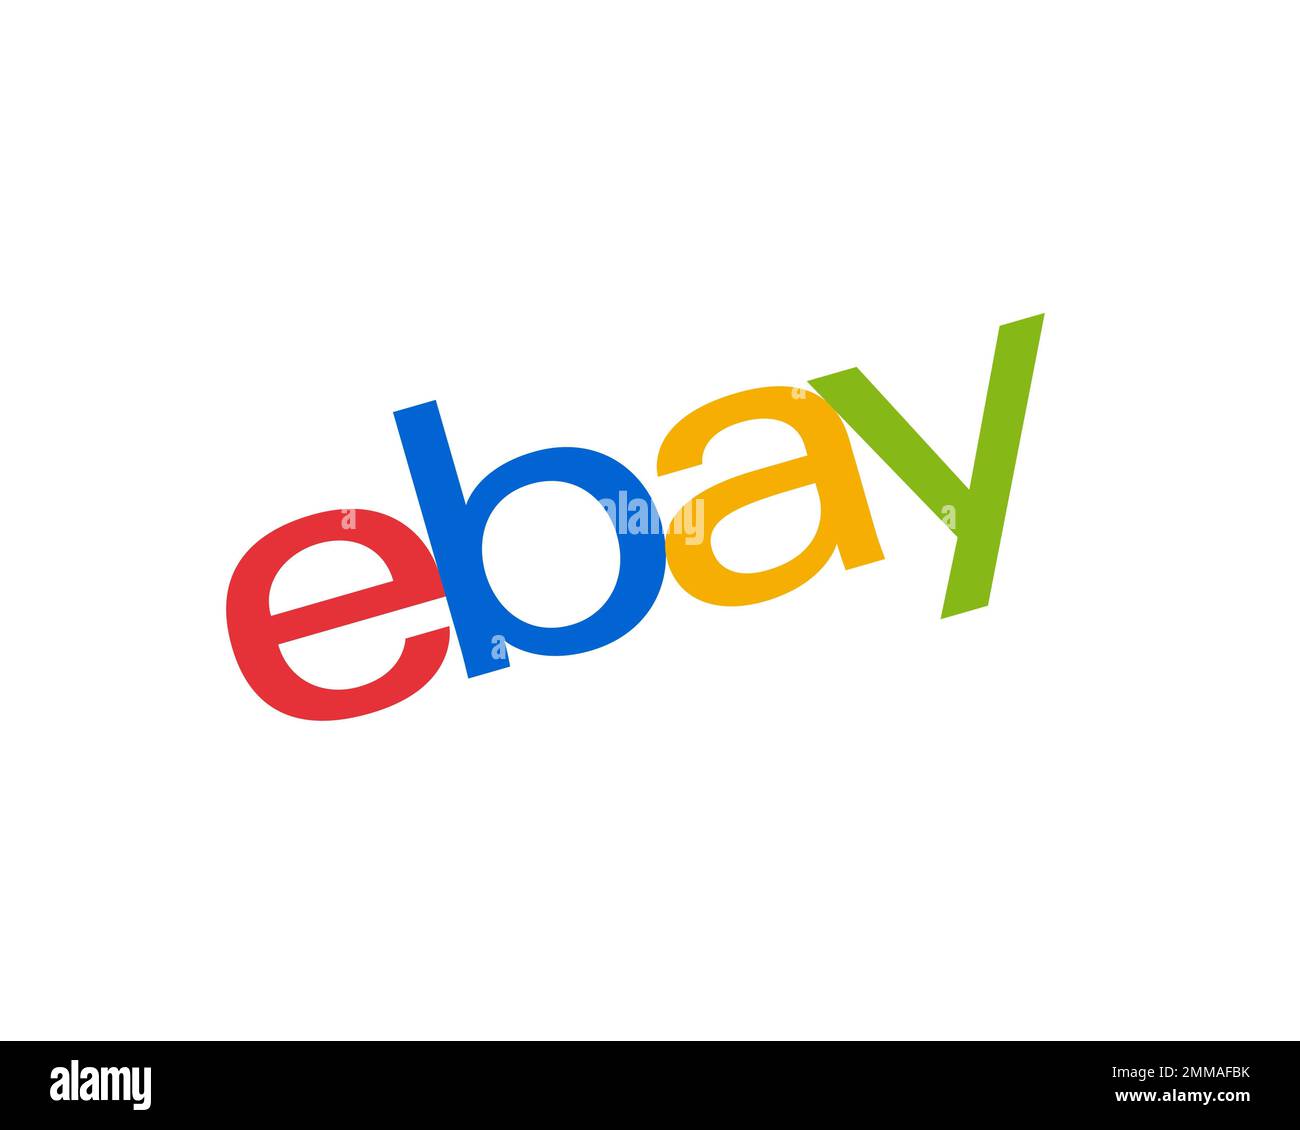 EBay, pivoté, fond blanc, logo, marque Banque D'Images